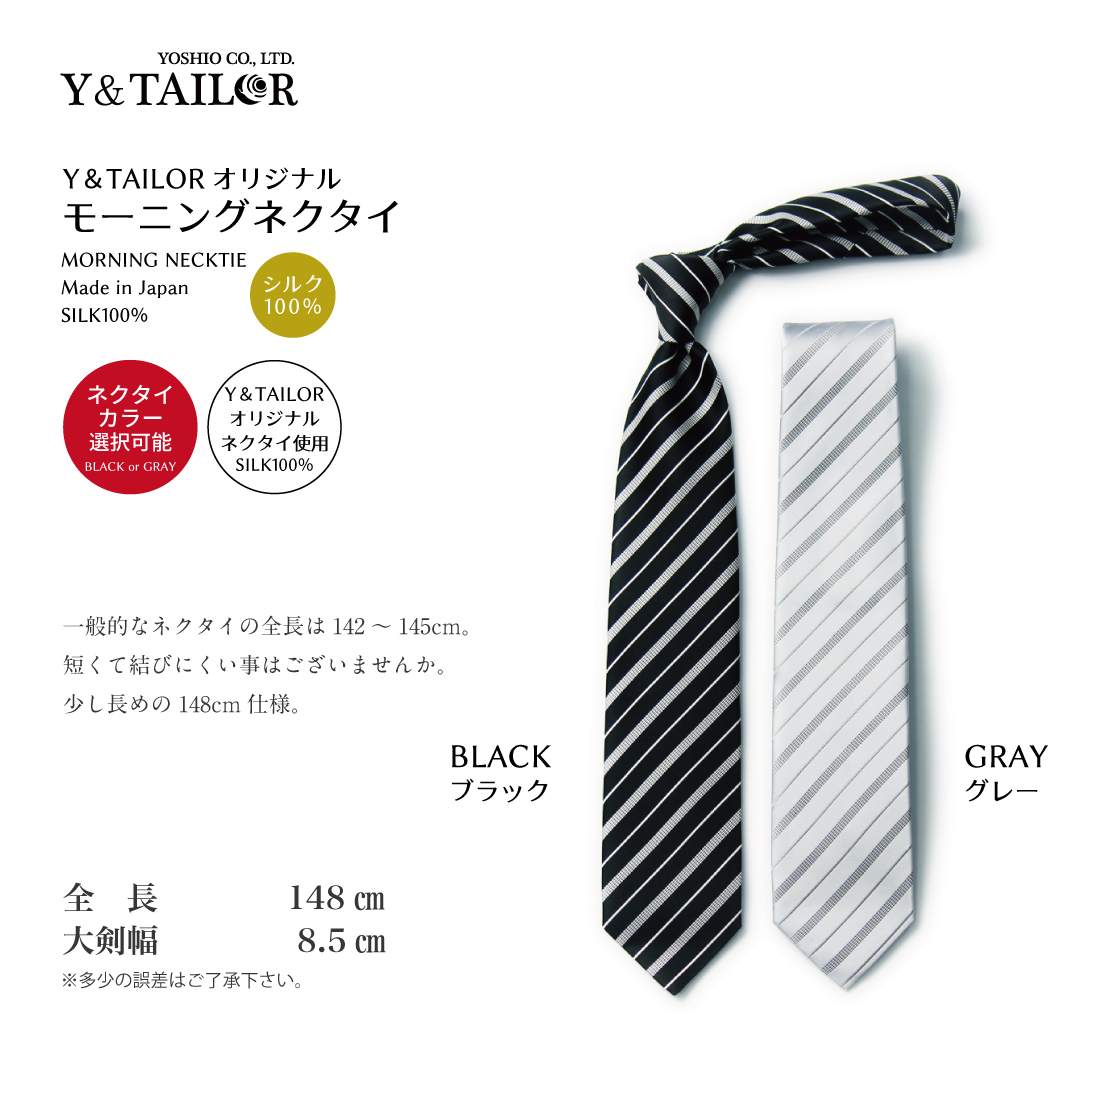 . родители mo- человек g комплект галстук шелк 100% мелкие вещи Wing цвет рубашка можно выбрать 7 позиций комплект подтяжки плюс kospa[C-6G]